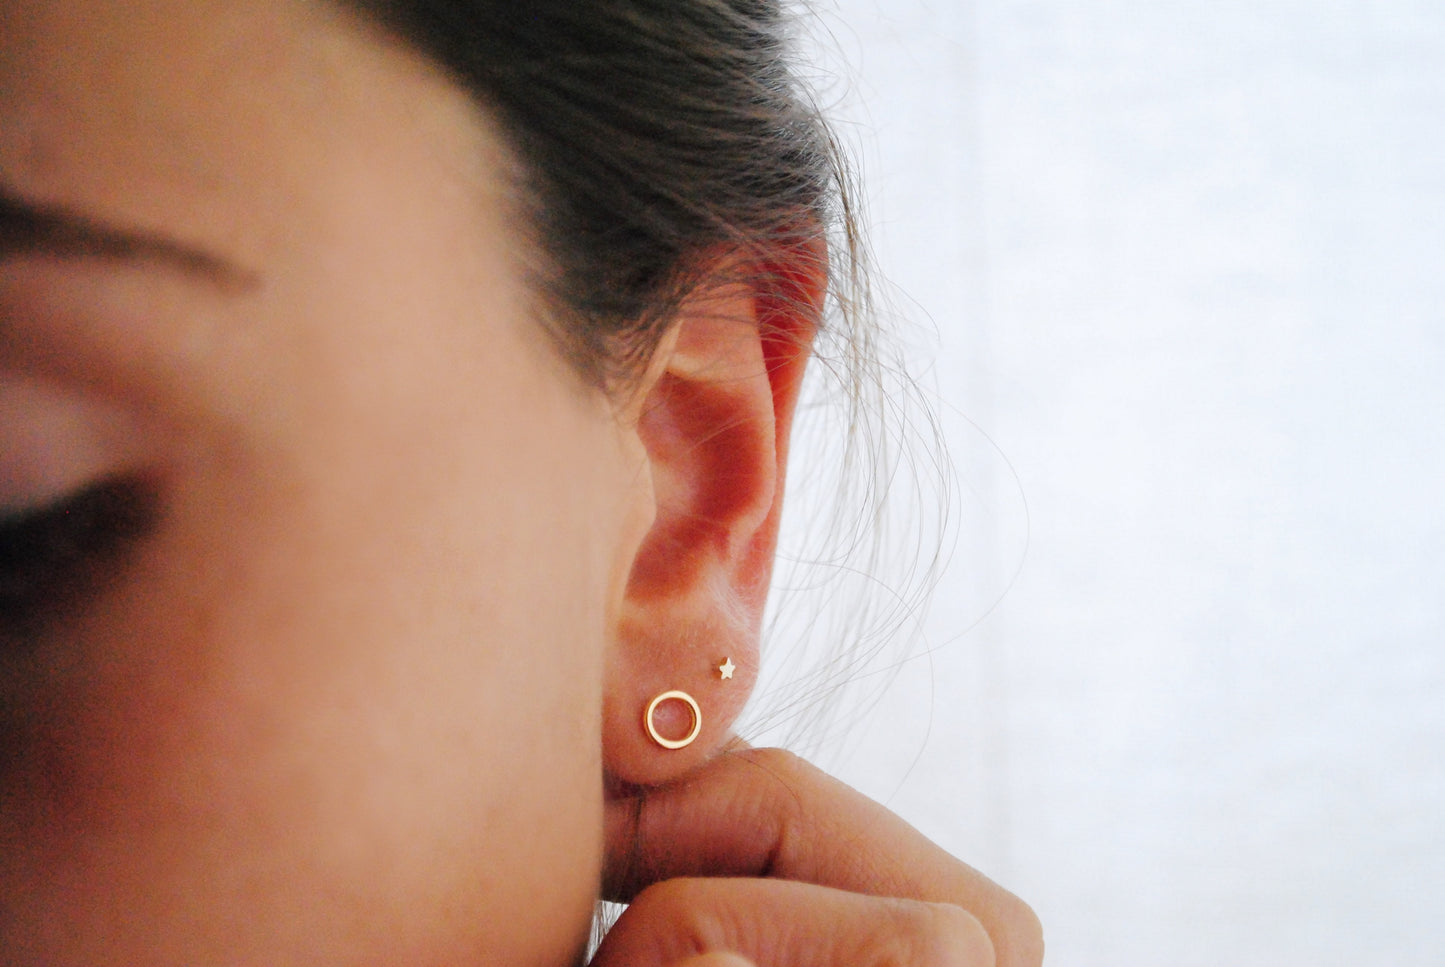 Tiny Little Star earring